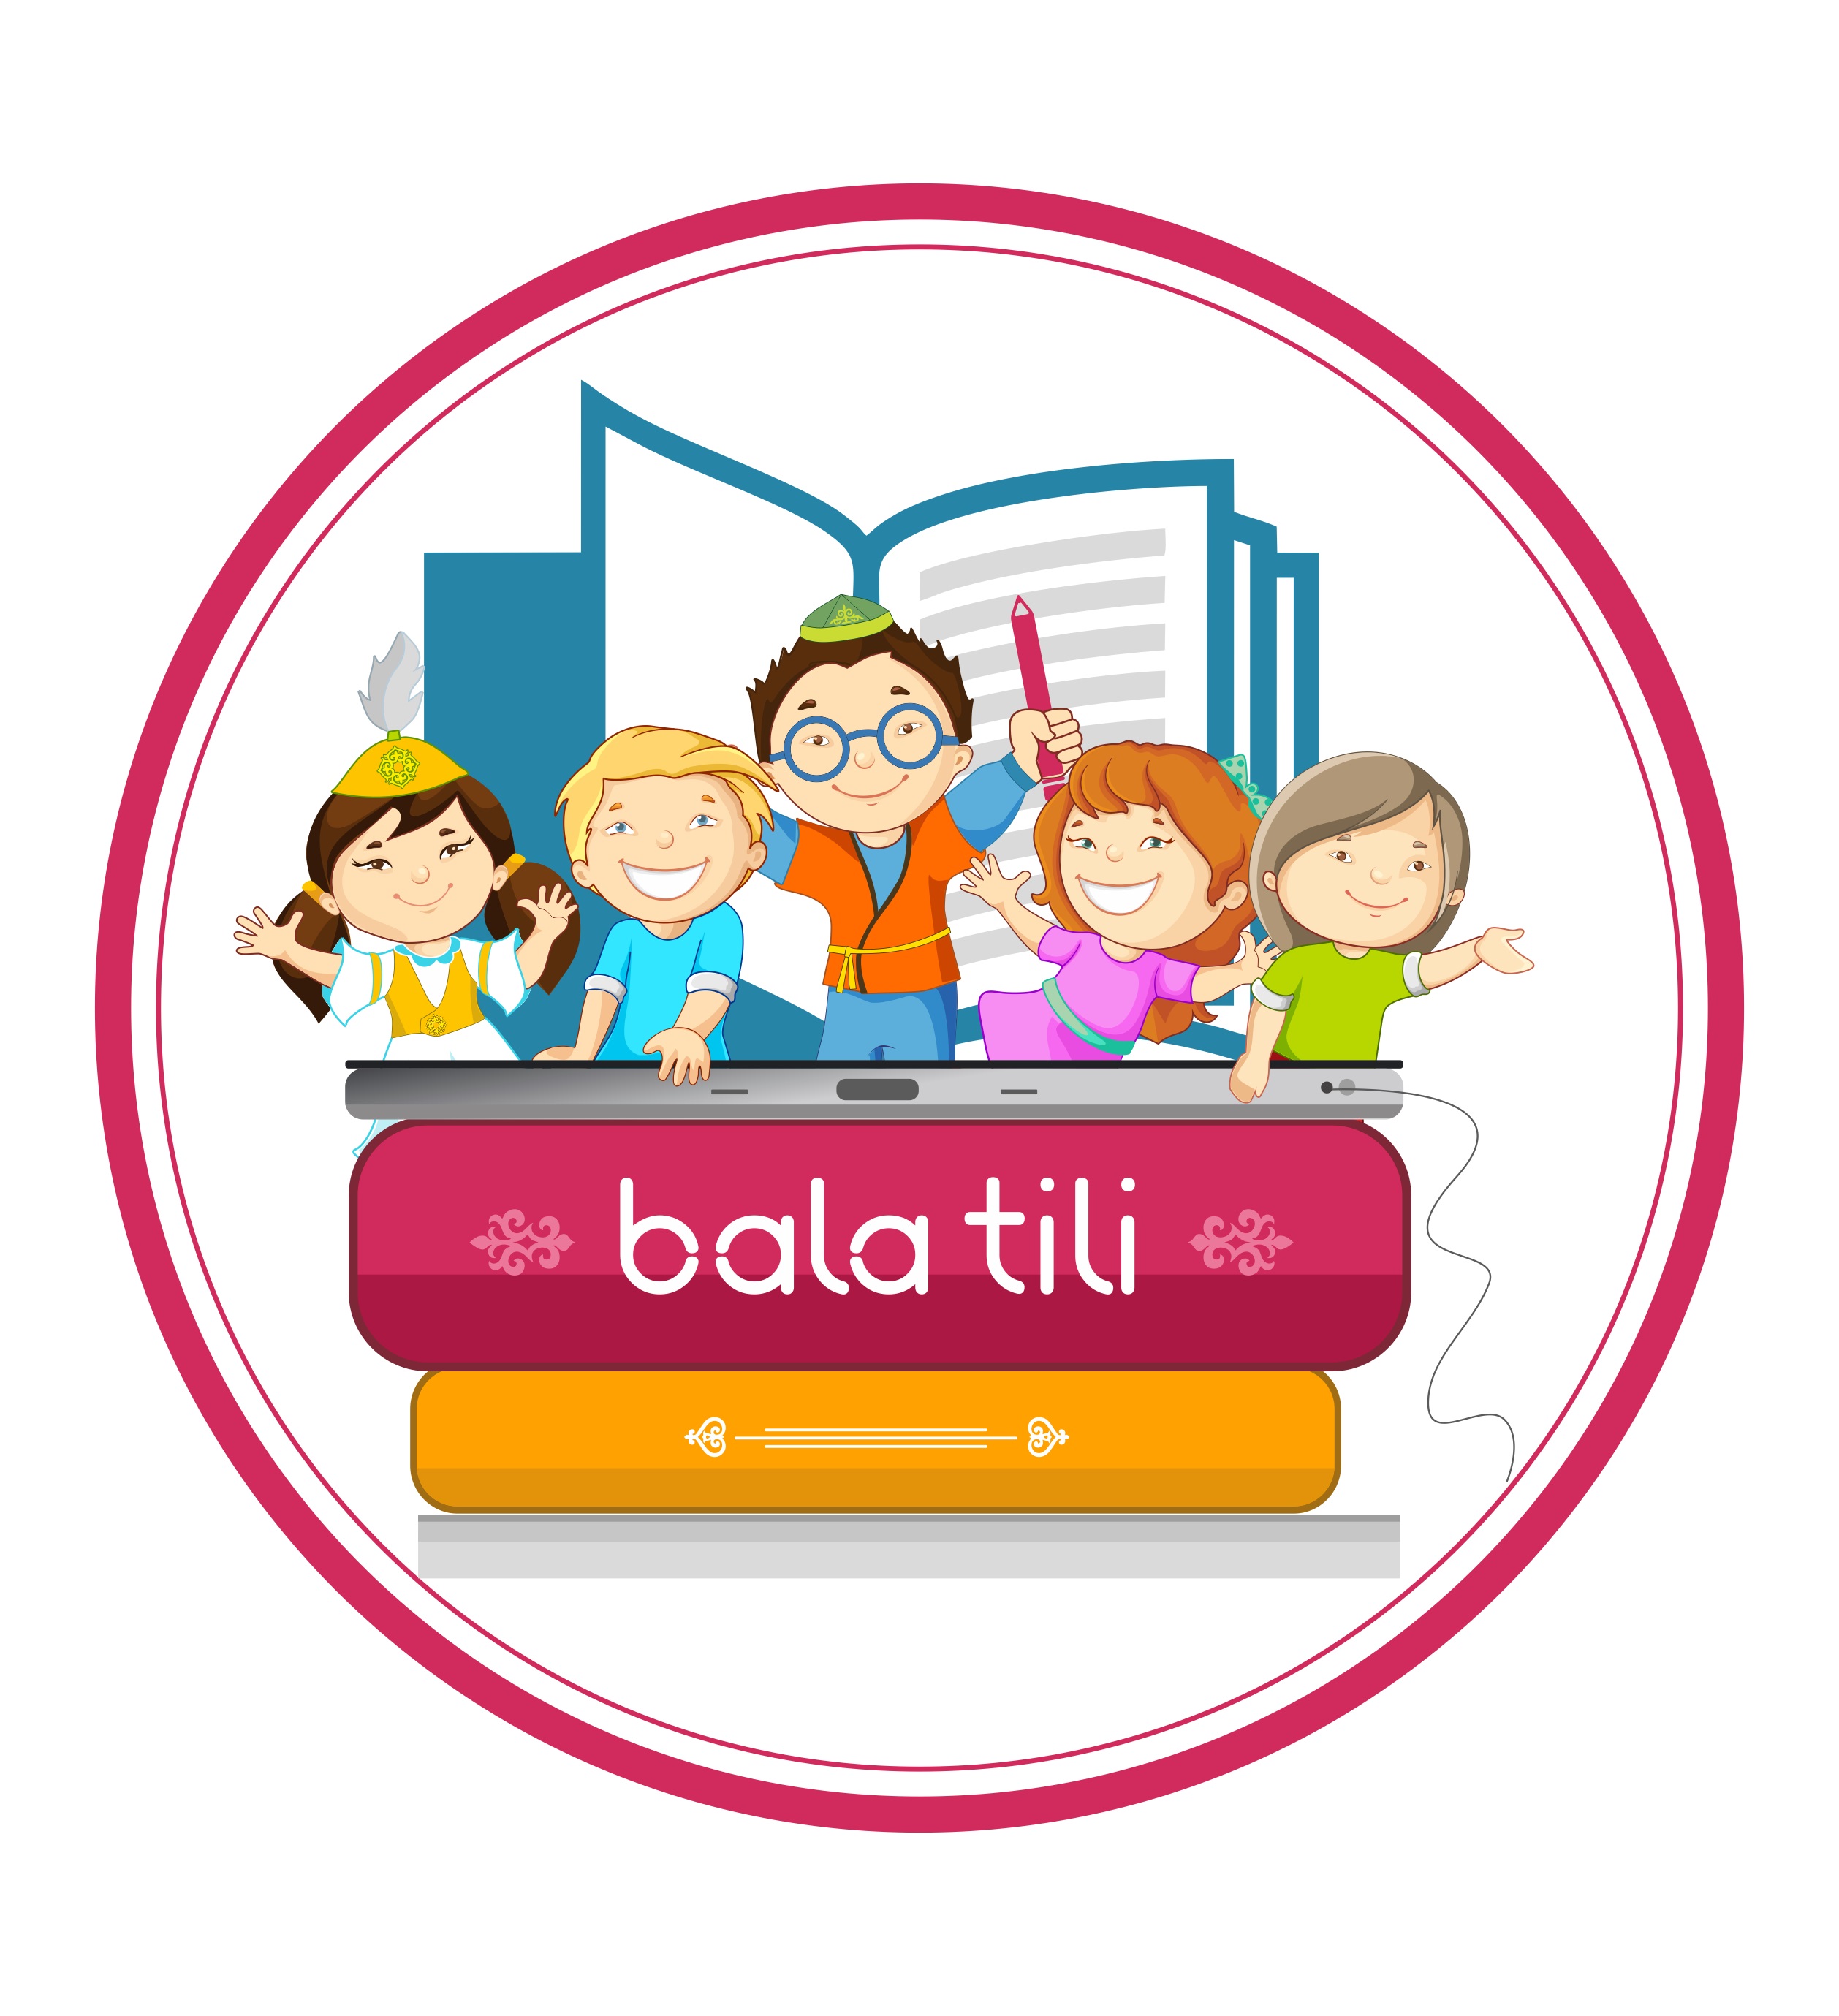 balatili.kz – балаларға қазақ тілін үйрететін пайдалы ресурс болмақ